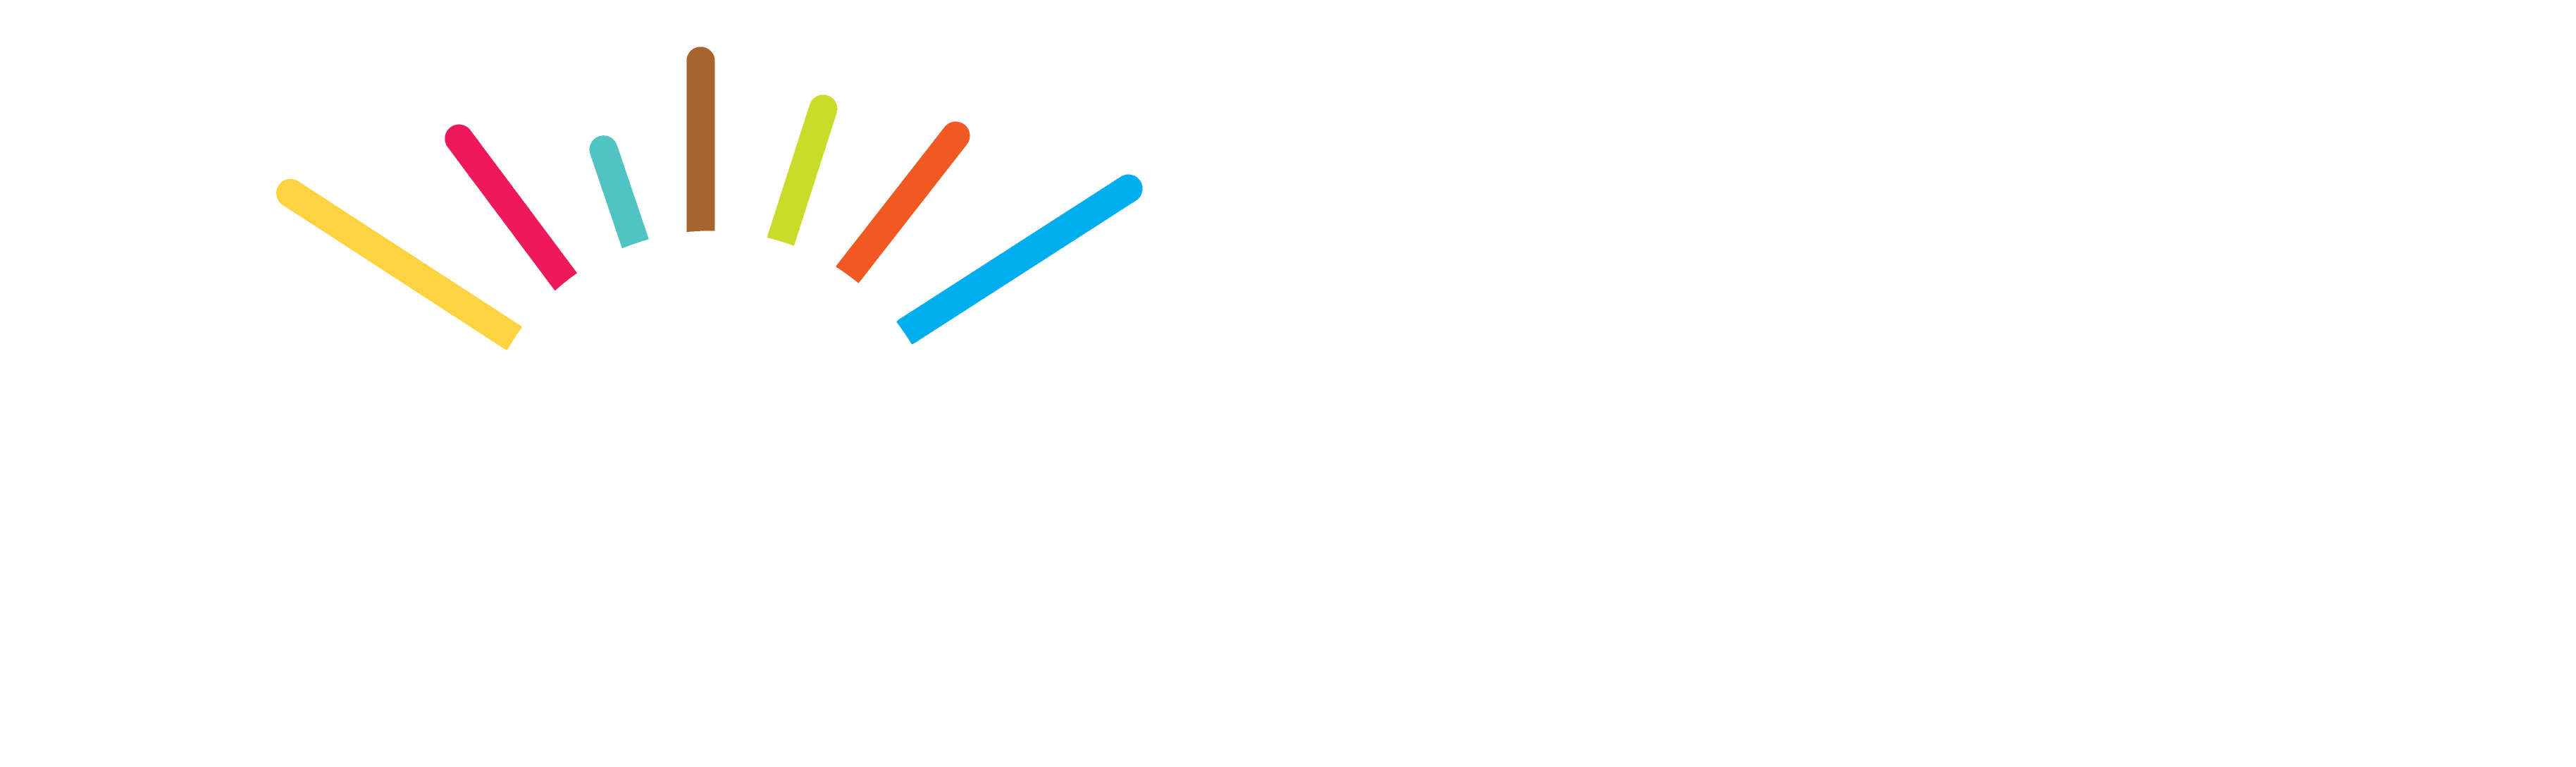 EC Hispanic Media